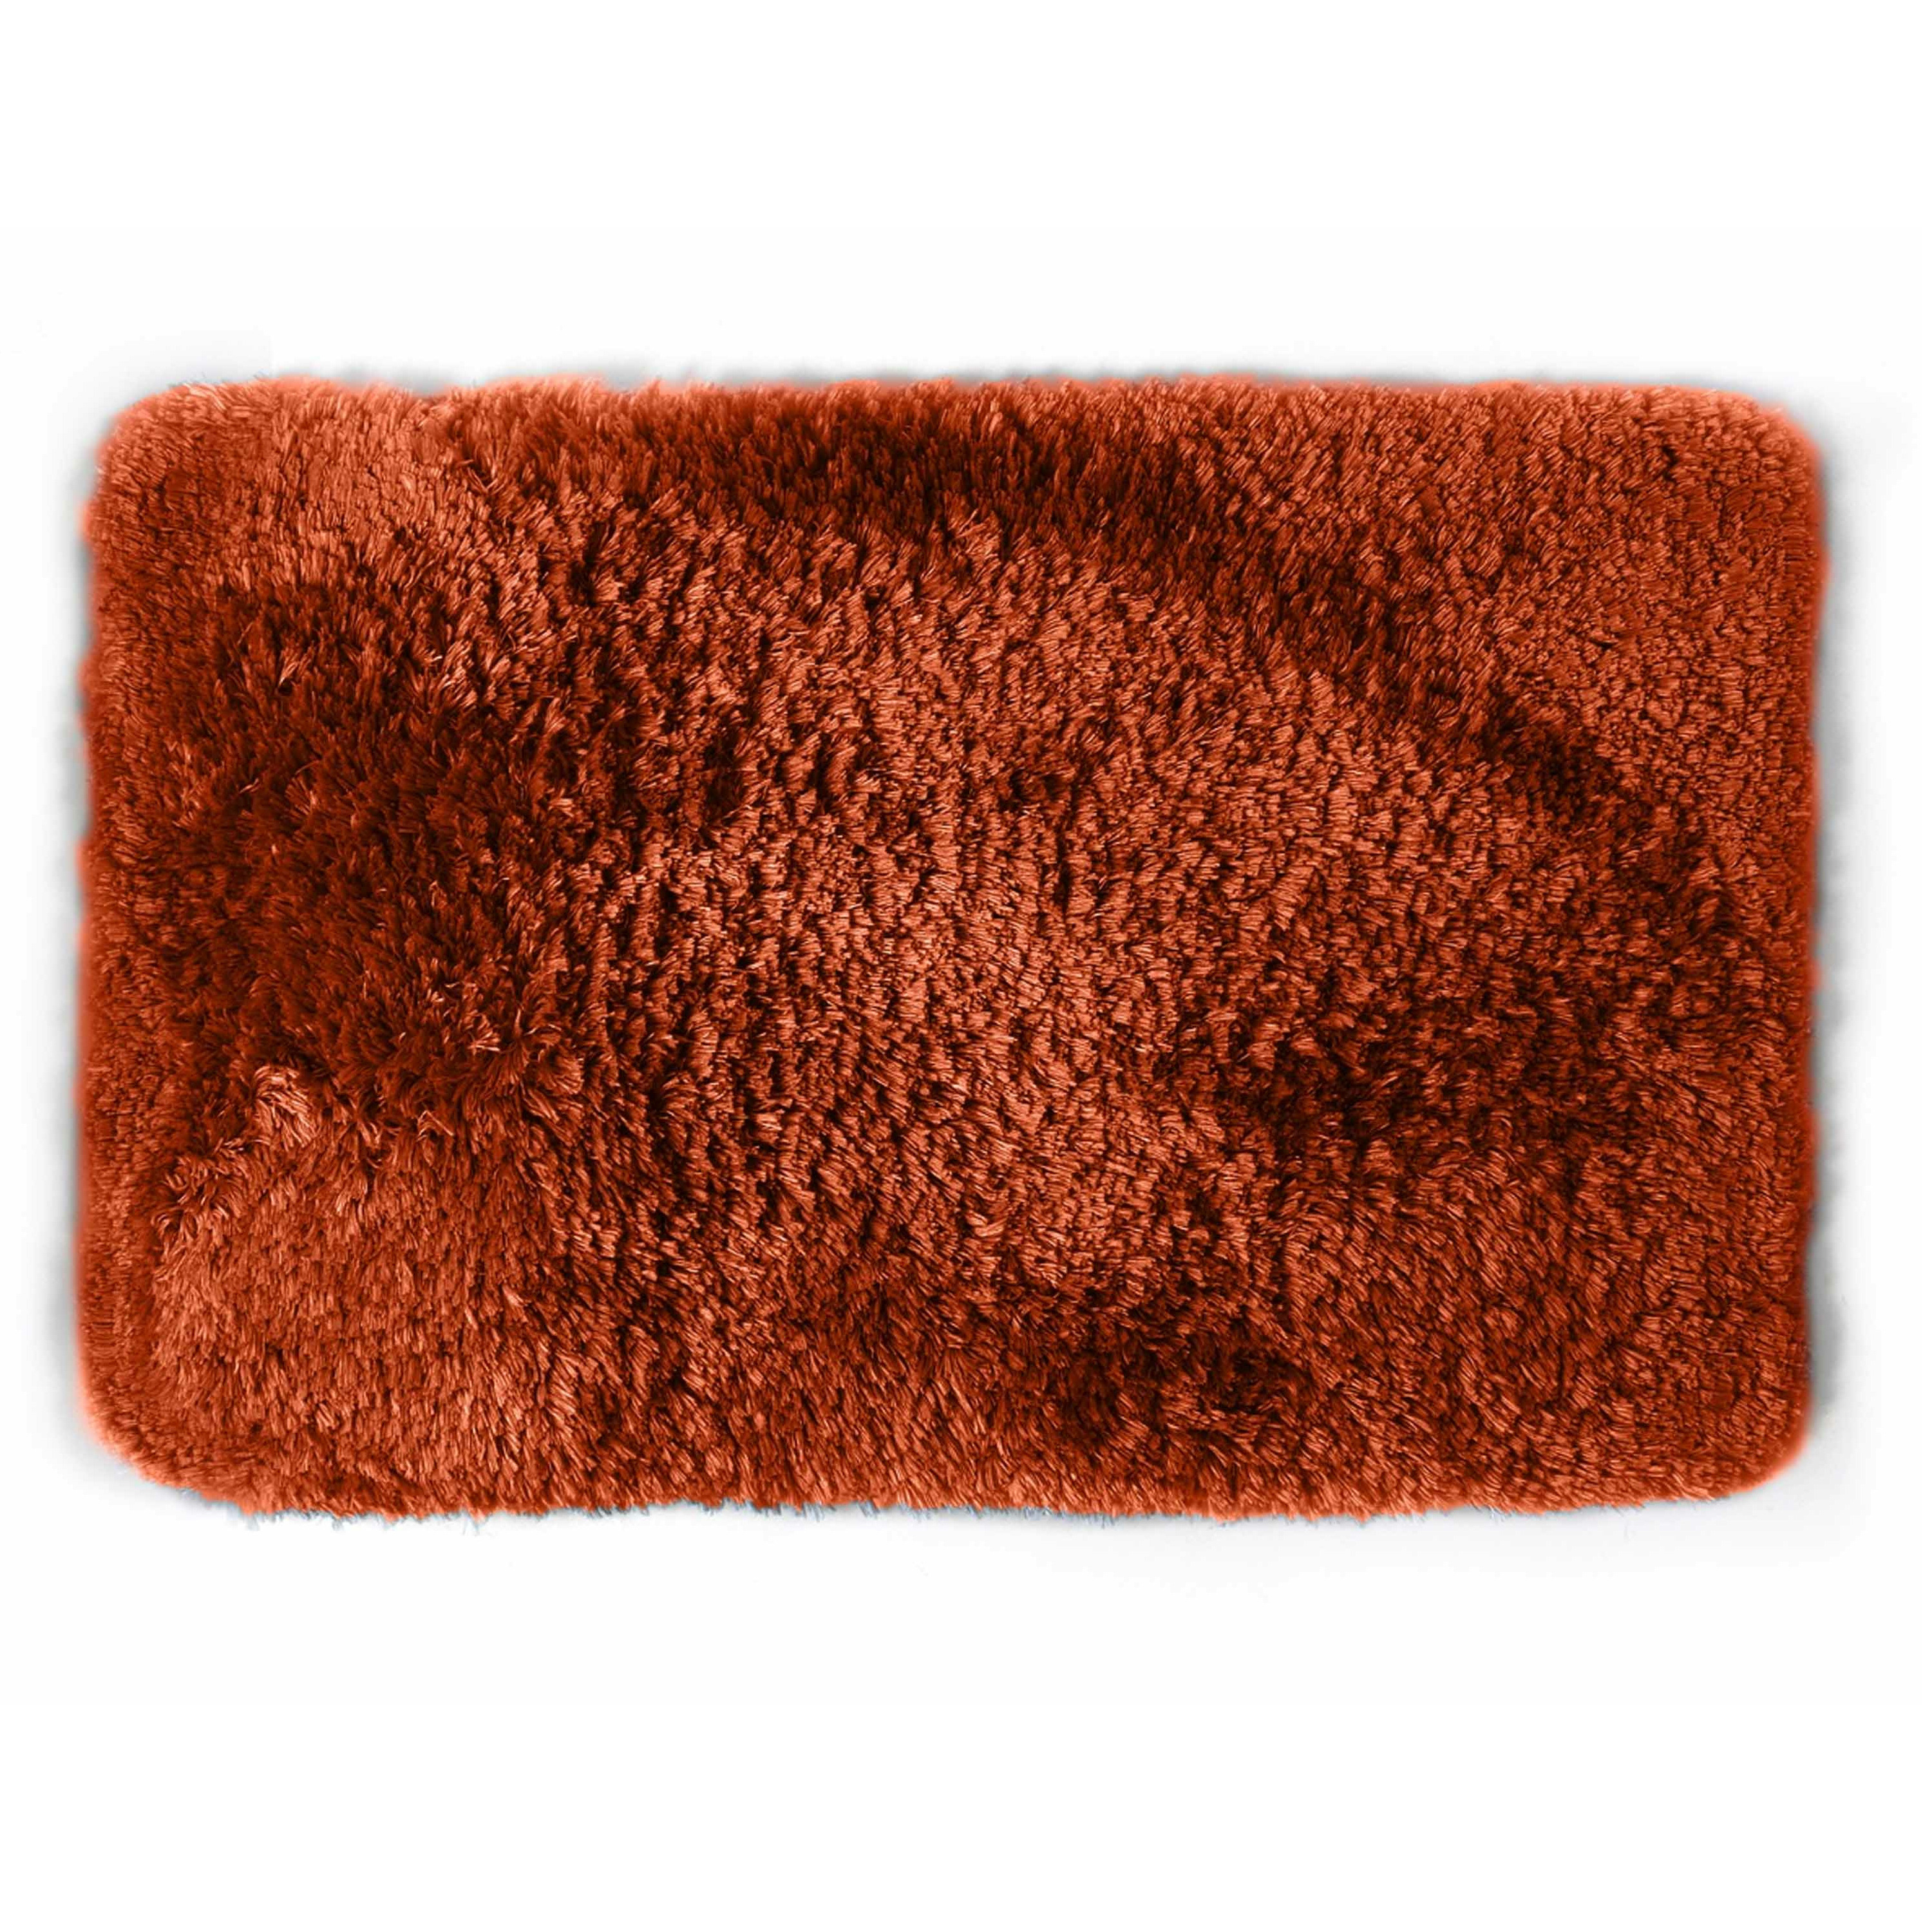 Spirella badkamer vloer kleedje-badmat tapijt hoogpolig en luxe uitvoering terracotta 40 x 60 cm Mic